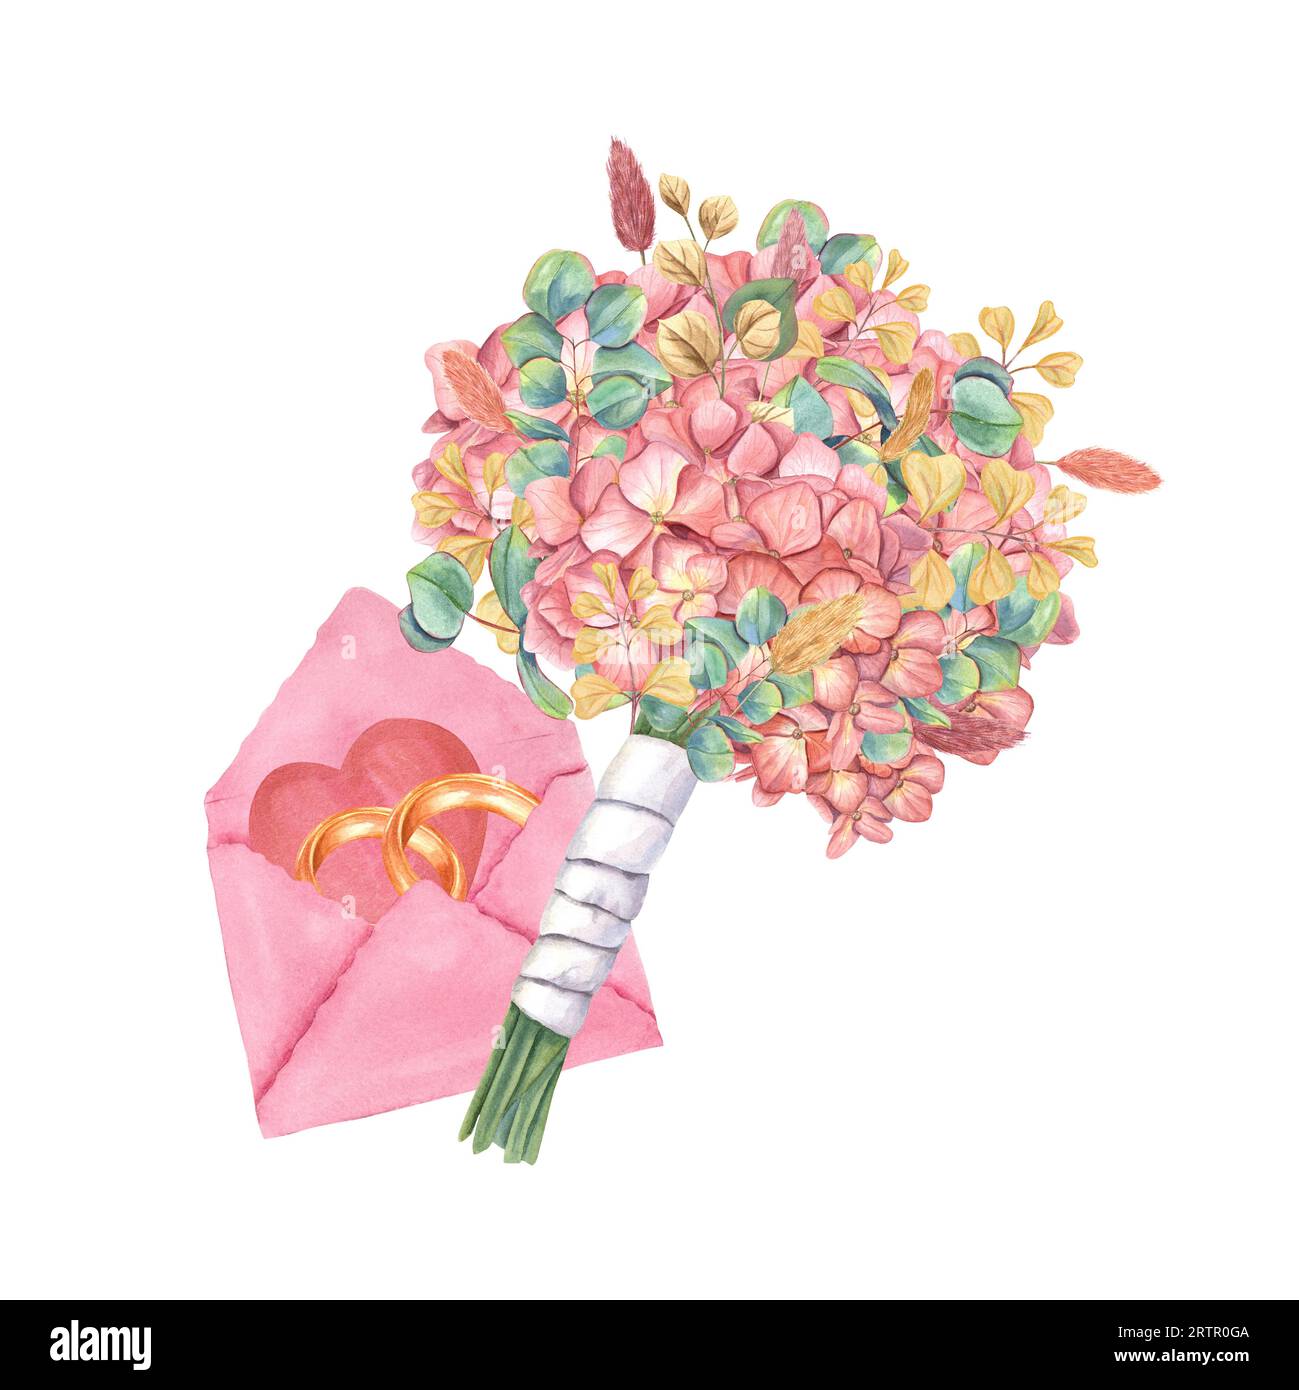 Brautstrauß und rosafarbener Umschlag mit goldenen Ringen und Herz. Zusammensetzung von Hydrangea, Eukalyptus, Lagurus mit weißem Satinband. Stockfoto